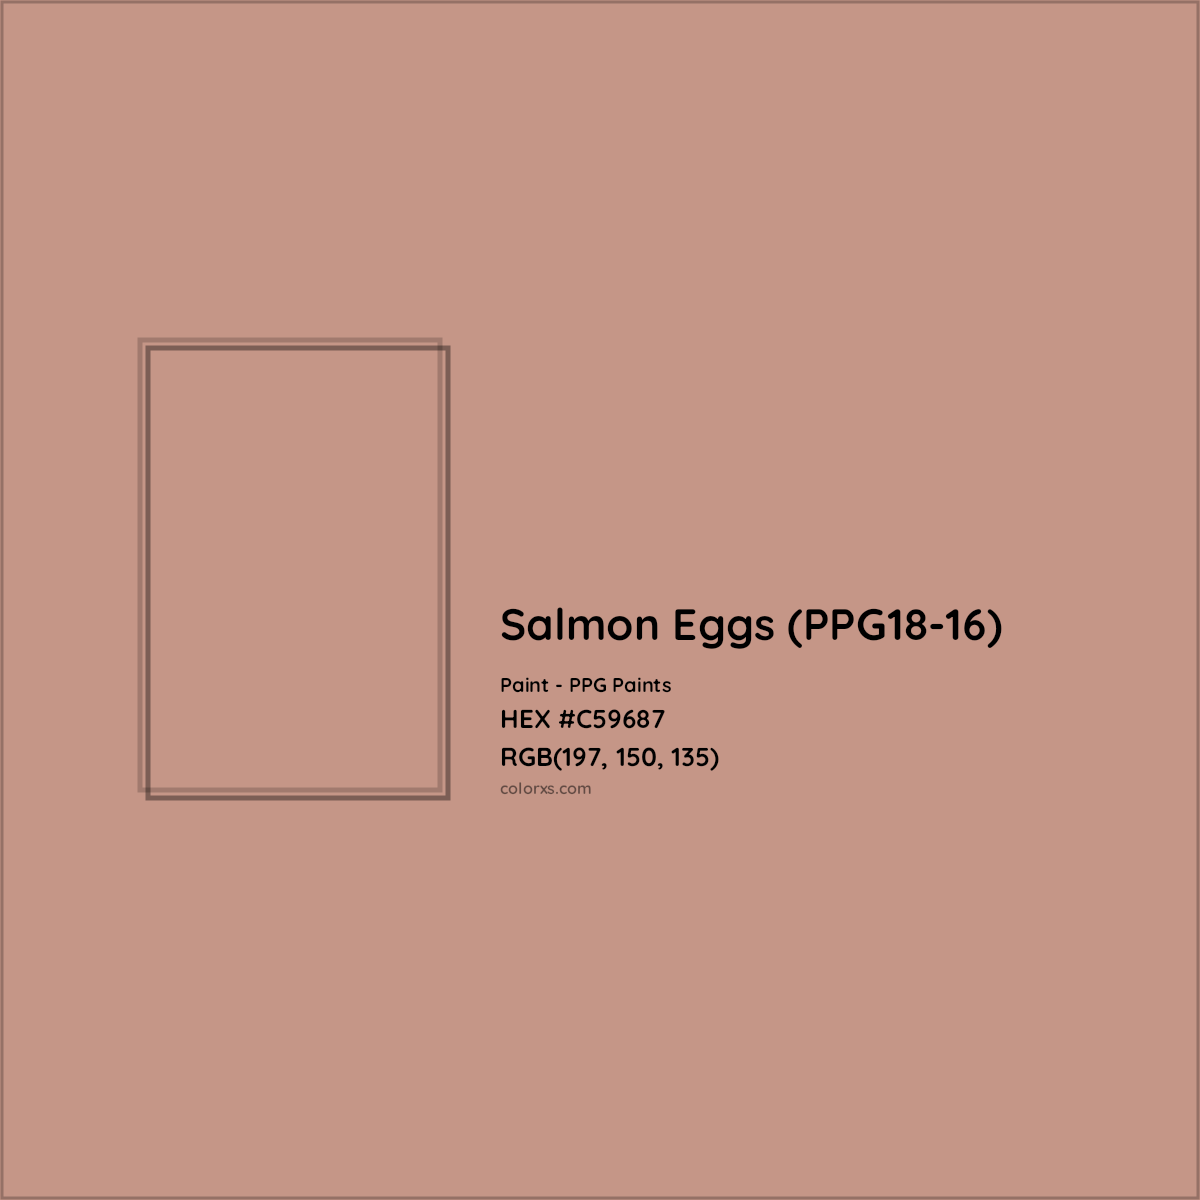 HEX #C59687 Salmon Eggs (PPG18-16) Paint PPG Paints - Color Code